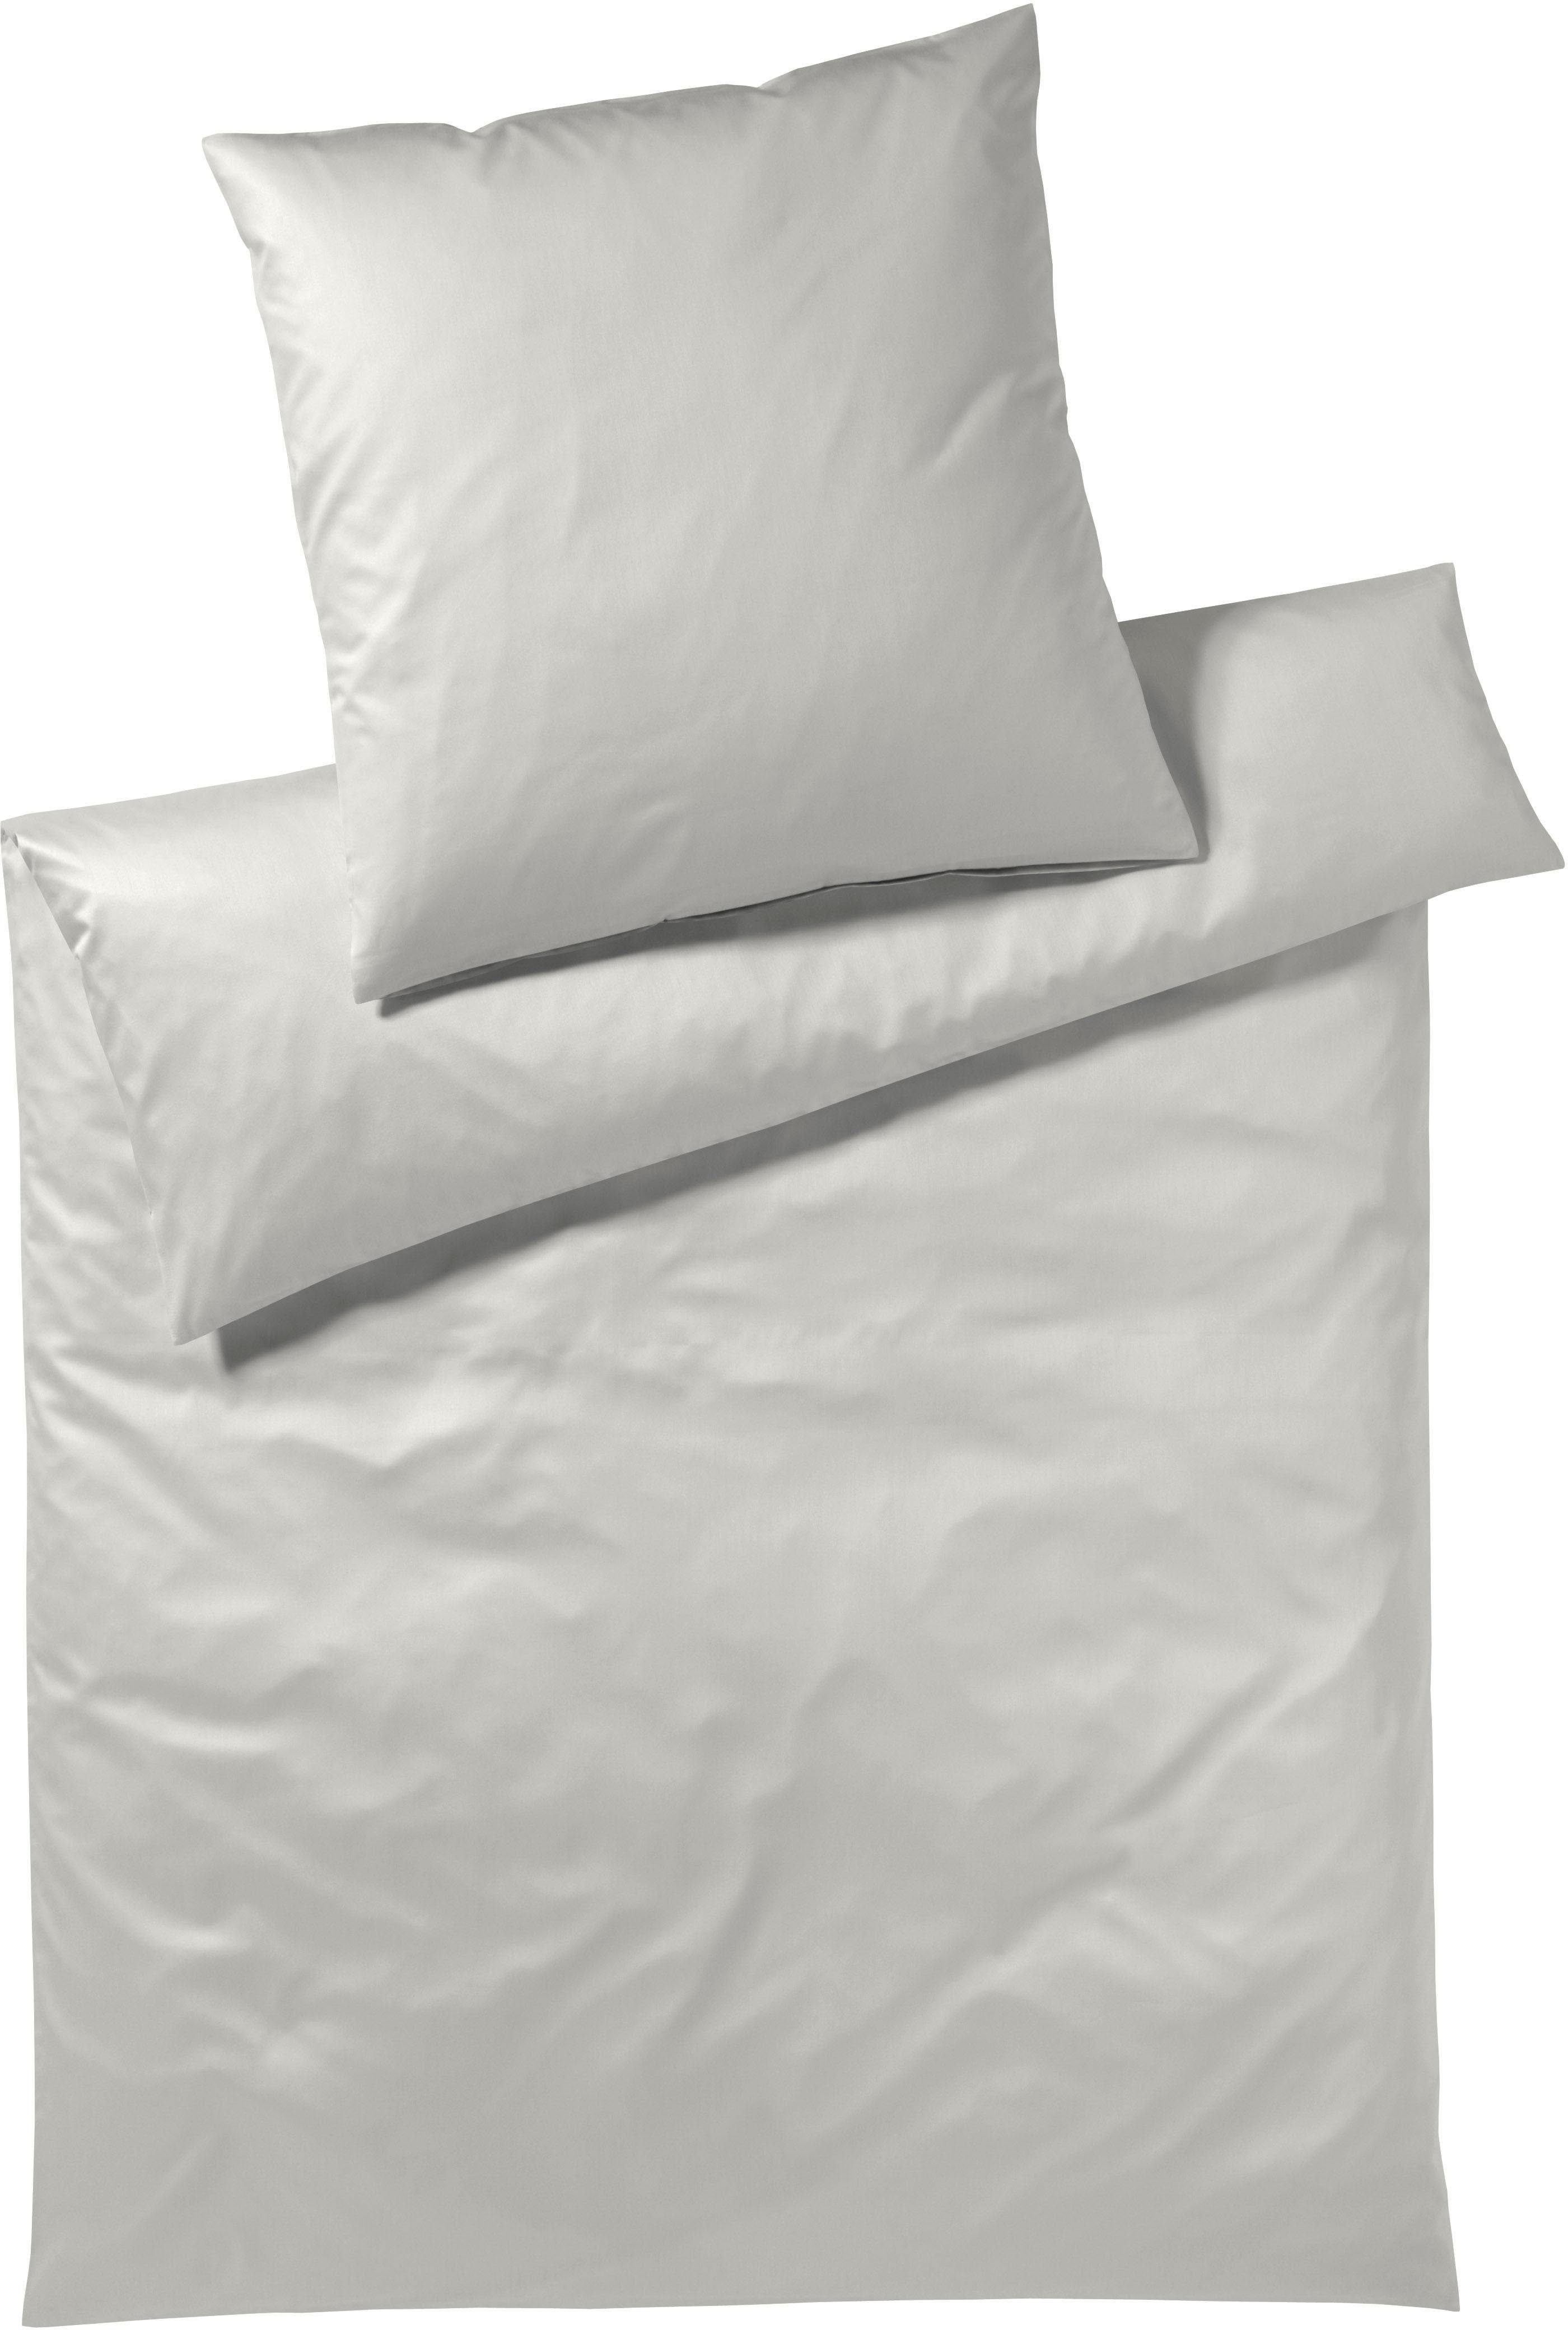 Bettwäsche Solid in Gr. 135x200 oder 155x220 cm, Elegante, Mako-Satin, 2  teilig, Bettwäsche aus Baumwolle, elegante Bettwäsche mit Reißverschluss,  Aus hautfreundlichem & luftdurchlässigem Material hergestellt